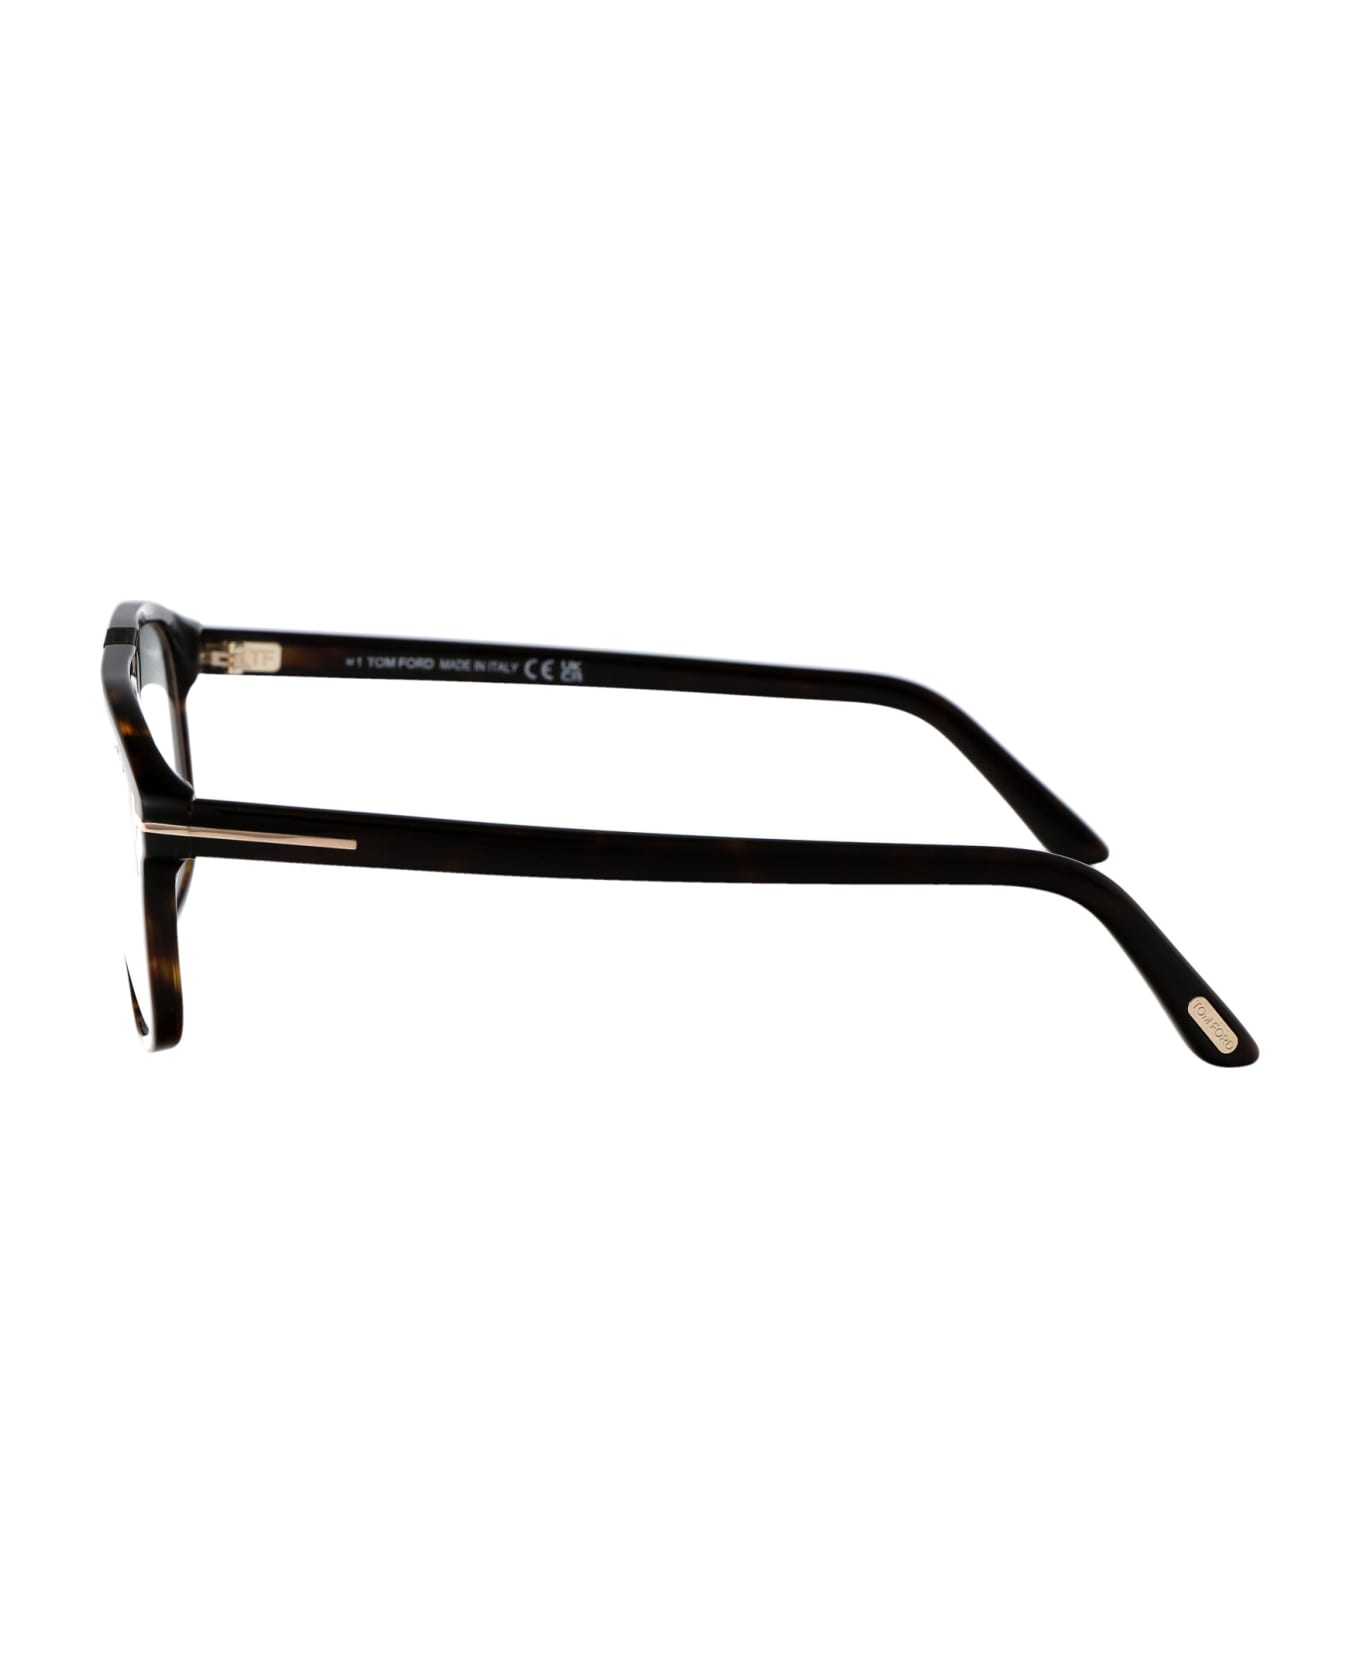 Tom Ford Eyewear Ft5901-b Glasses - 052 Avana Scura